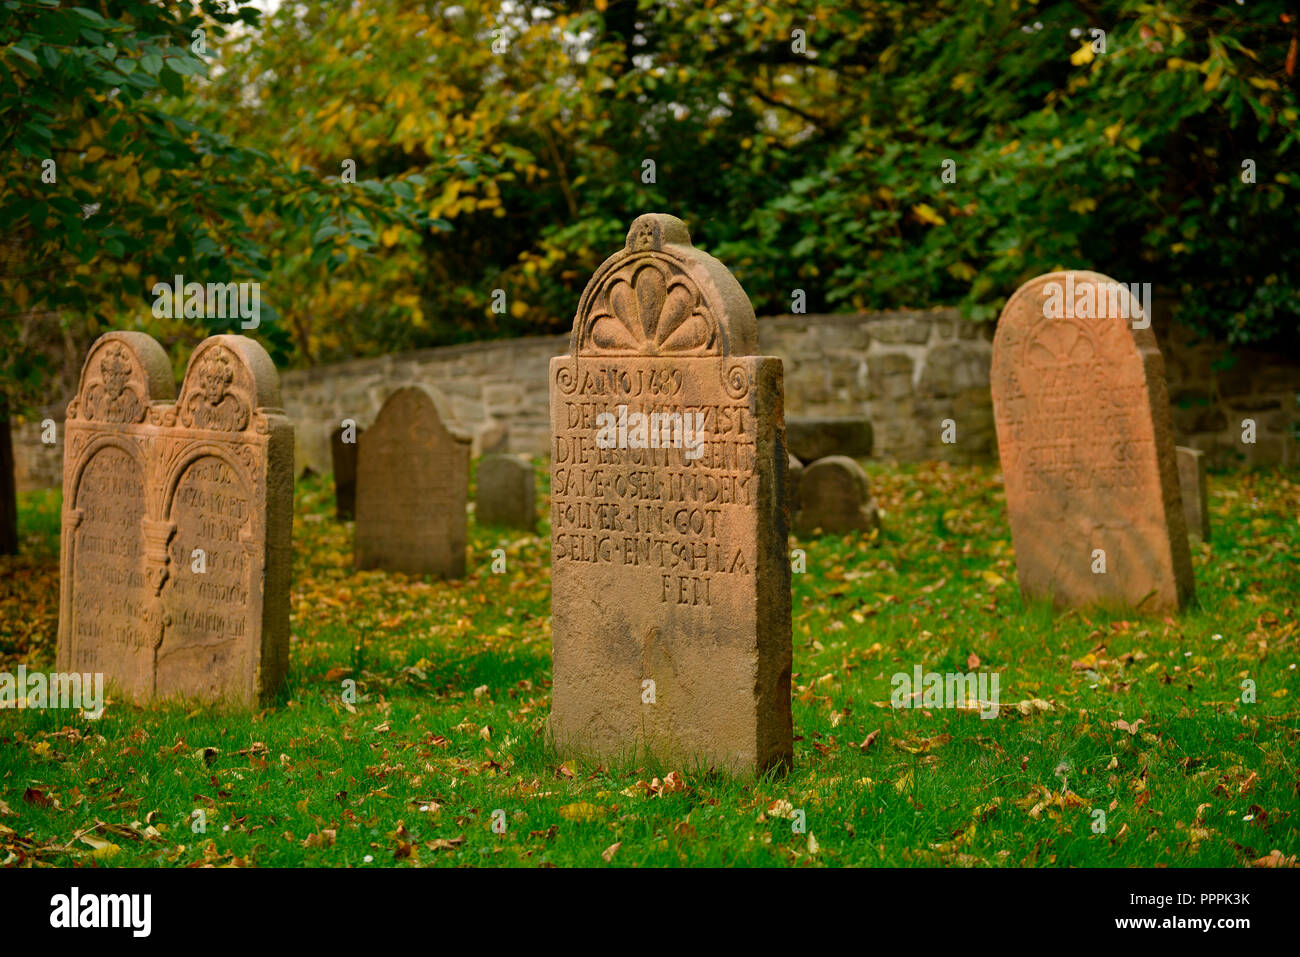 Grabsteine, Friedhof Dorfkirche Stiepel, Brockhauser Strasse, Stiepel, Bochum, Nordrhein-Westfalen, Deutschland Foto Stock